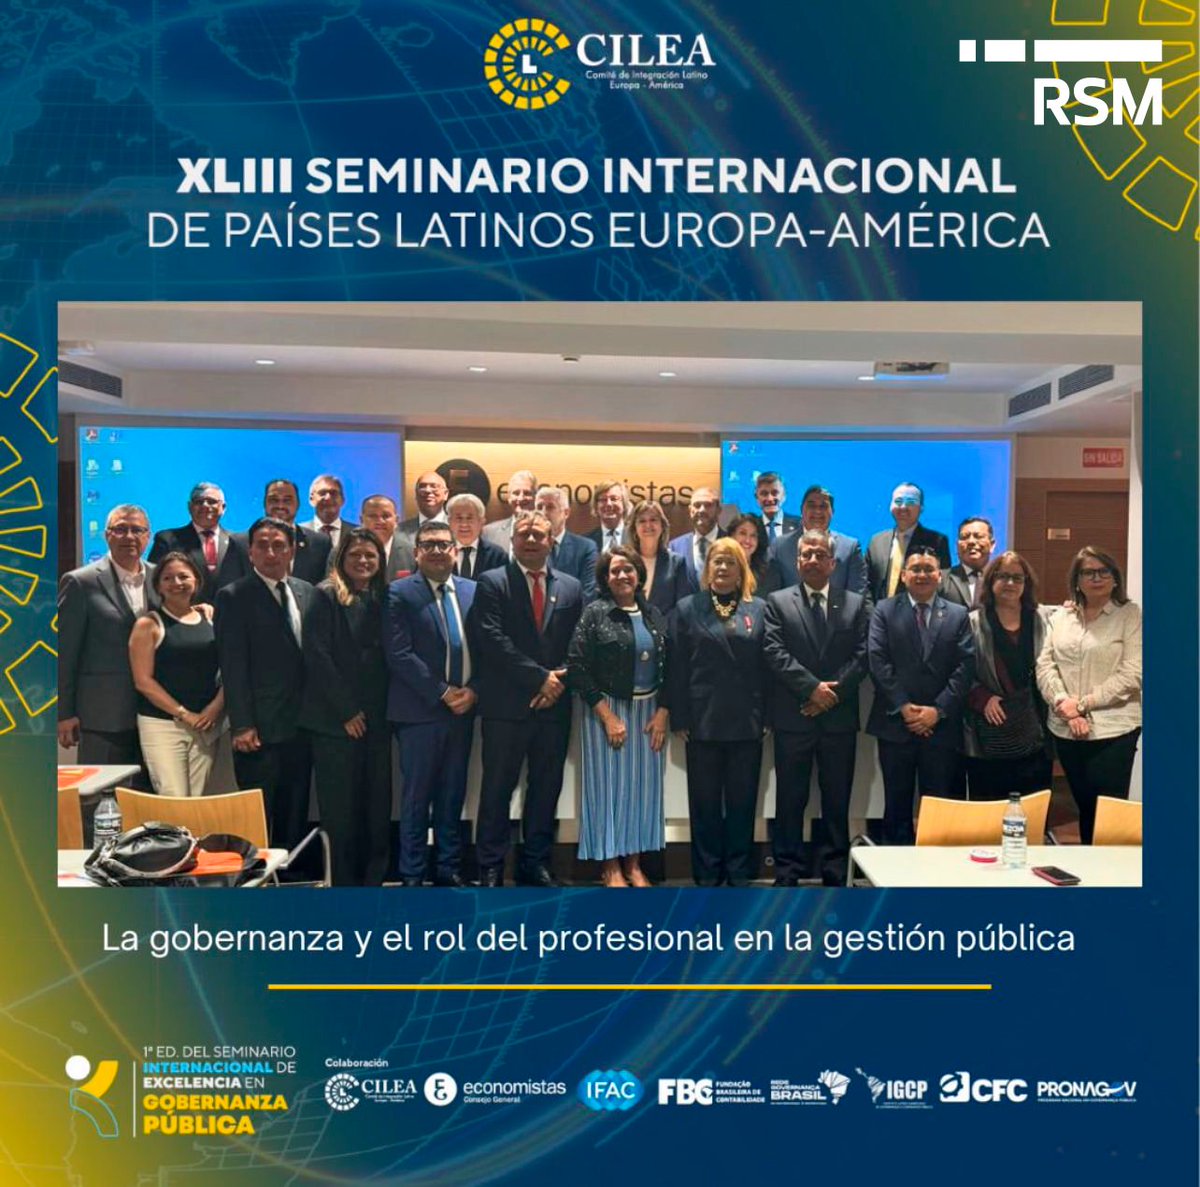 Laura Grajeda de #RSMMéxico tuvo una destacada participación en el XLIII Seminario Internacional de Países Latinos Europa-América. Un evento para los profesionales y líderes en el ámbito contable y de gobernanza a nivel internacional, llevado a cabo el pasado 21 de marzo en…